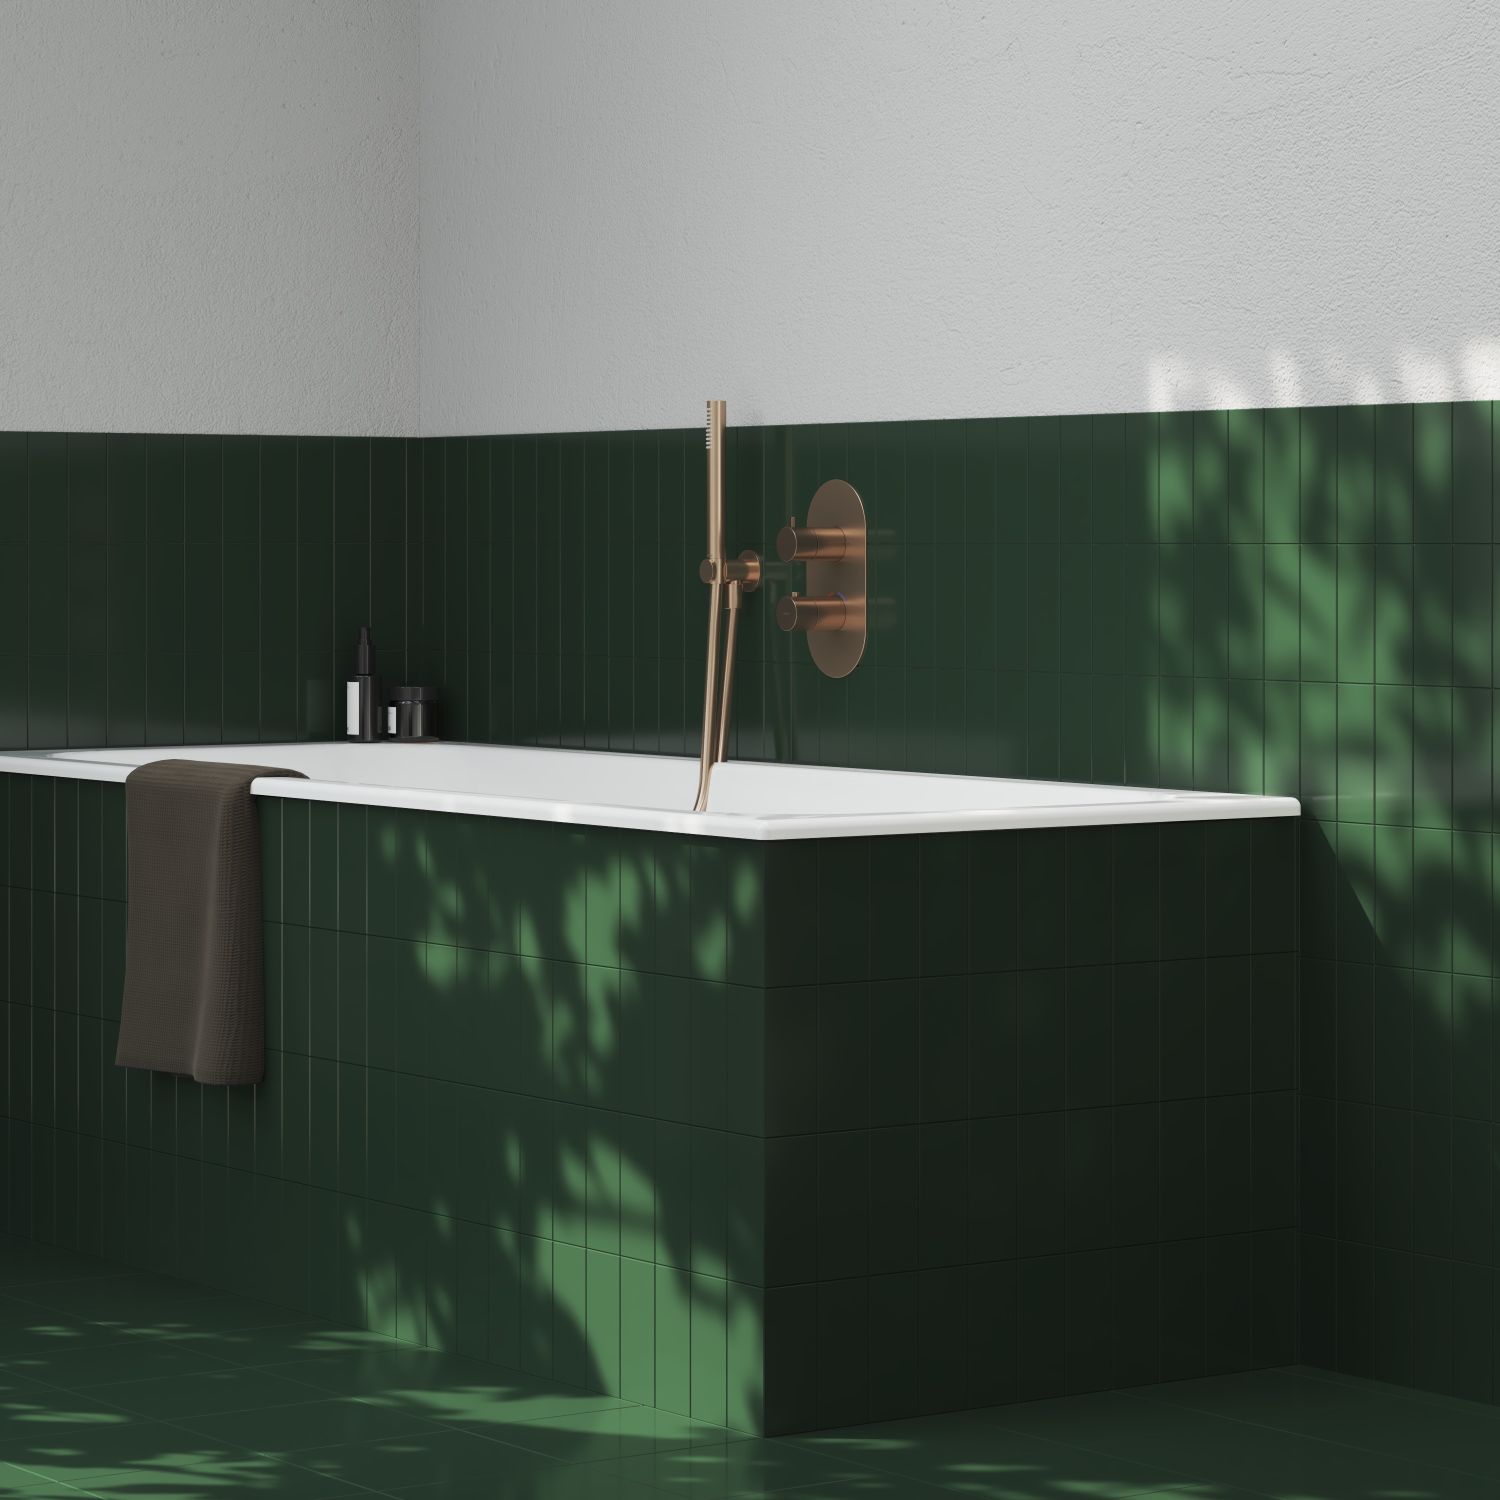 łazienka w stylu japońskim, mała łazienka w stylu japońskim, japońska łazienka, umywalka wolnostojąca, ścianka prysznicowa walk-in, łazienka w stylu zen, parawan nawannowy biały, deszczownica z kaskadą